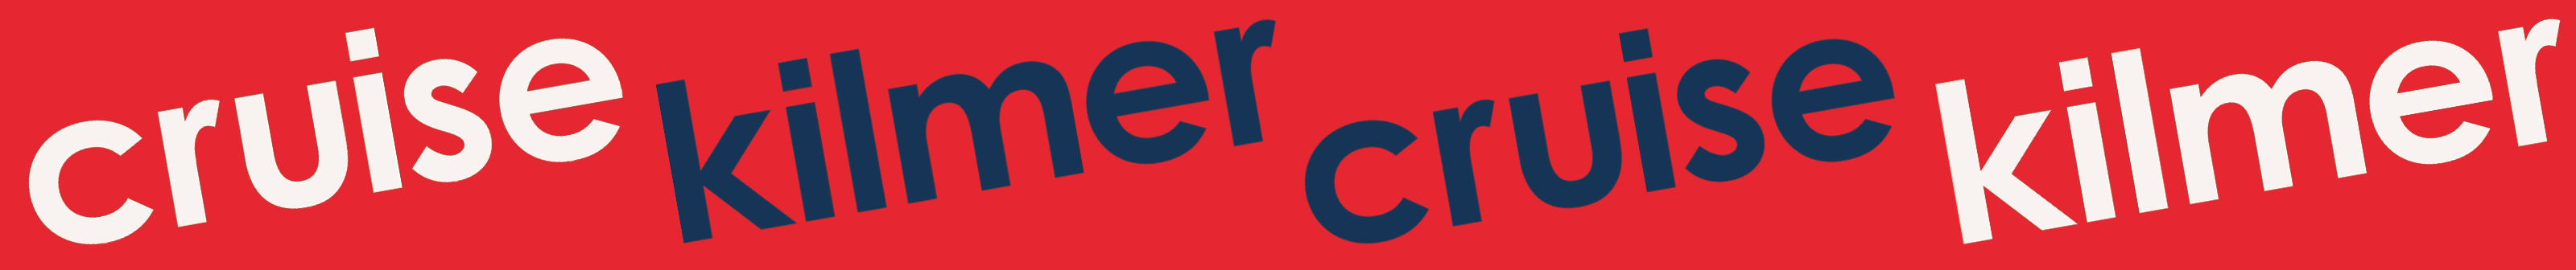 Kilmer & Cruise's profile banner